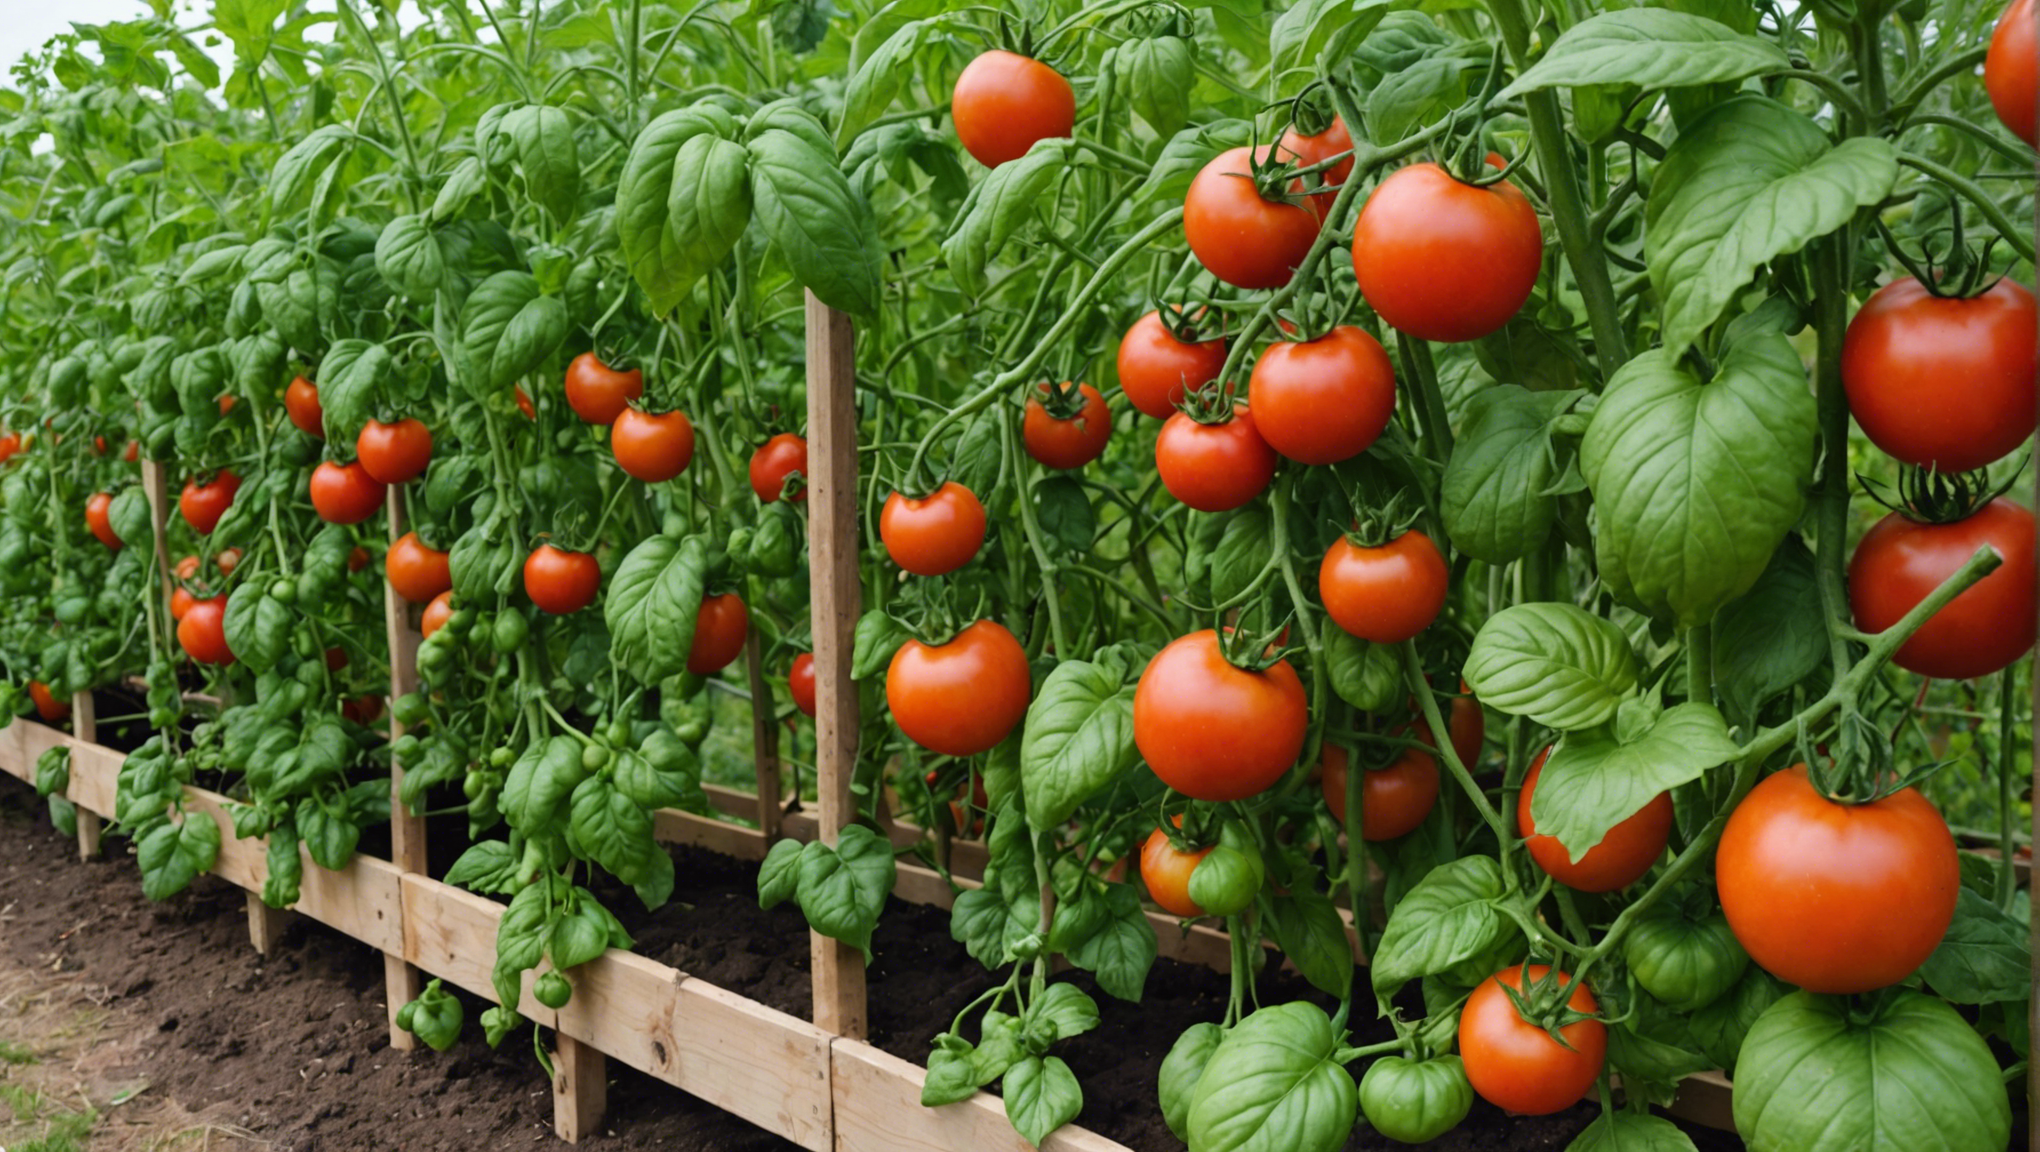 découvrez comment protéger efficacement les plants de tomates du vent au potager pour assurer une croissance saine et une récolte abondante. conseils pratiques et solutions adaptées pour préserver vos plants de tomates des effets néfastes du vent.